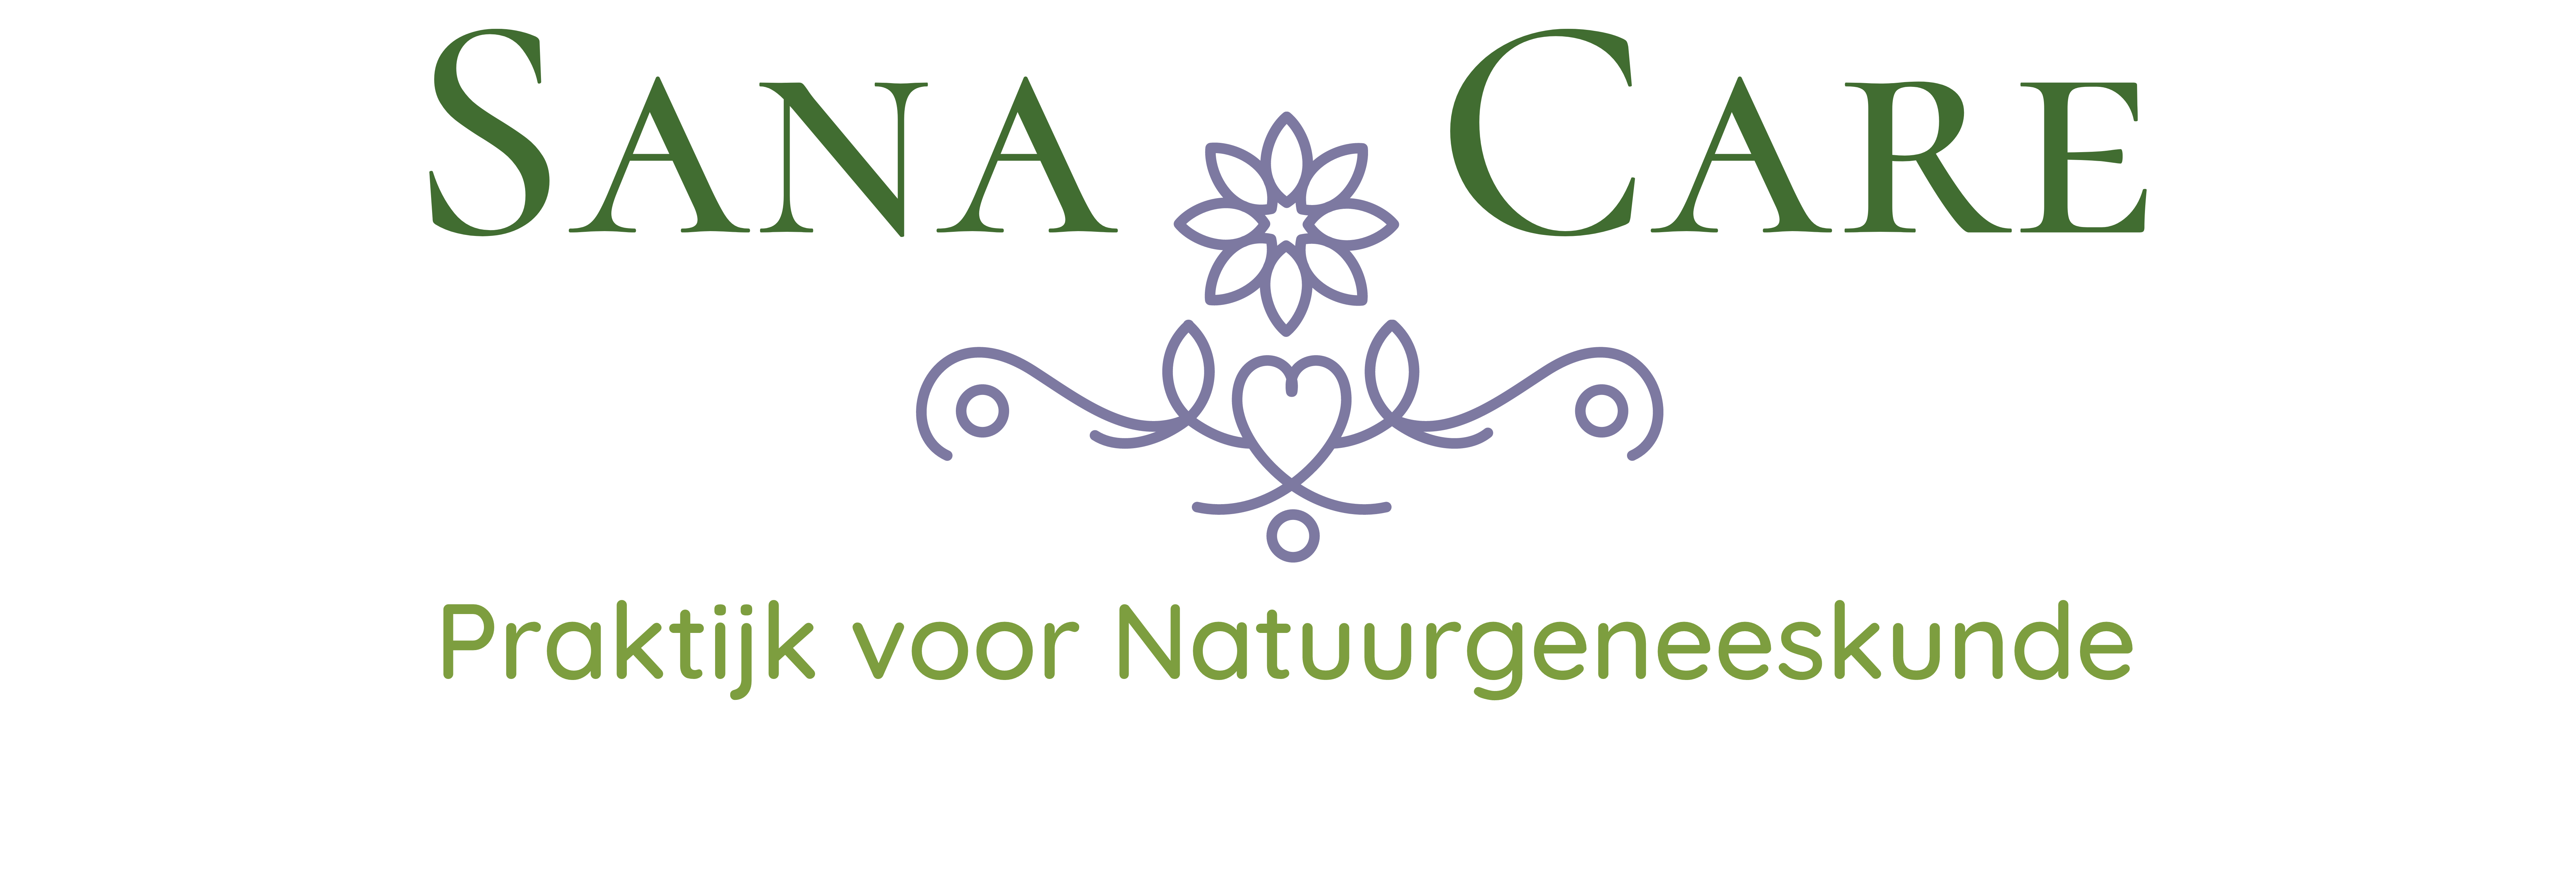 Sana Care – Praktijk voor Natuurgeneeskunde Winterswijk